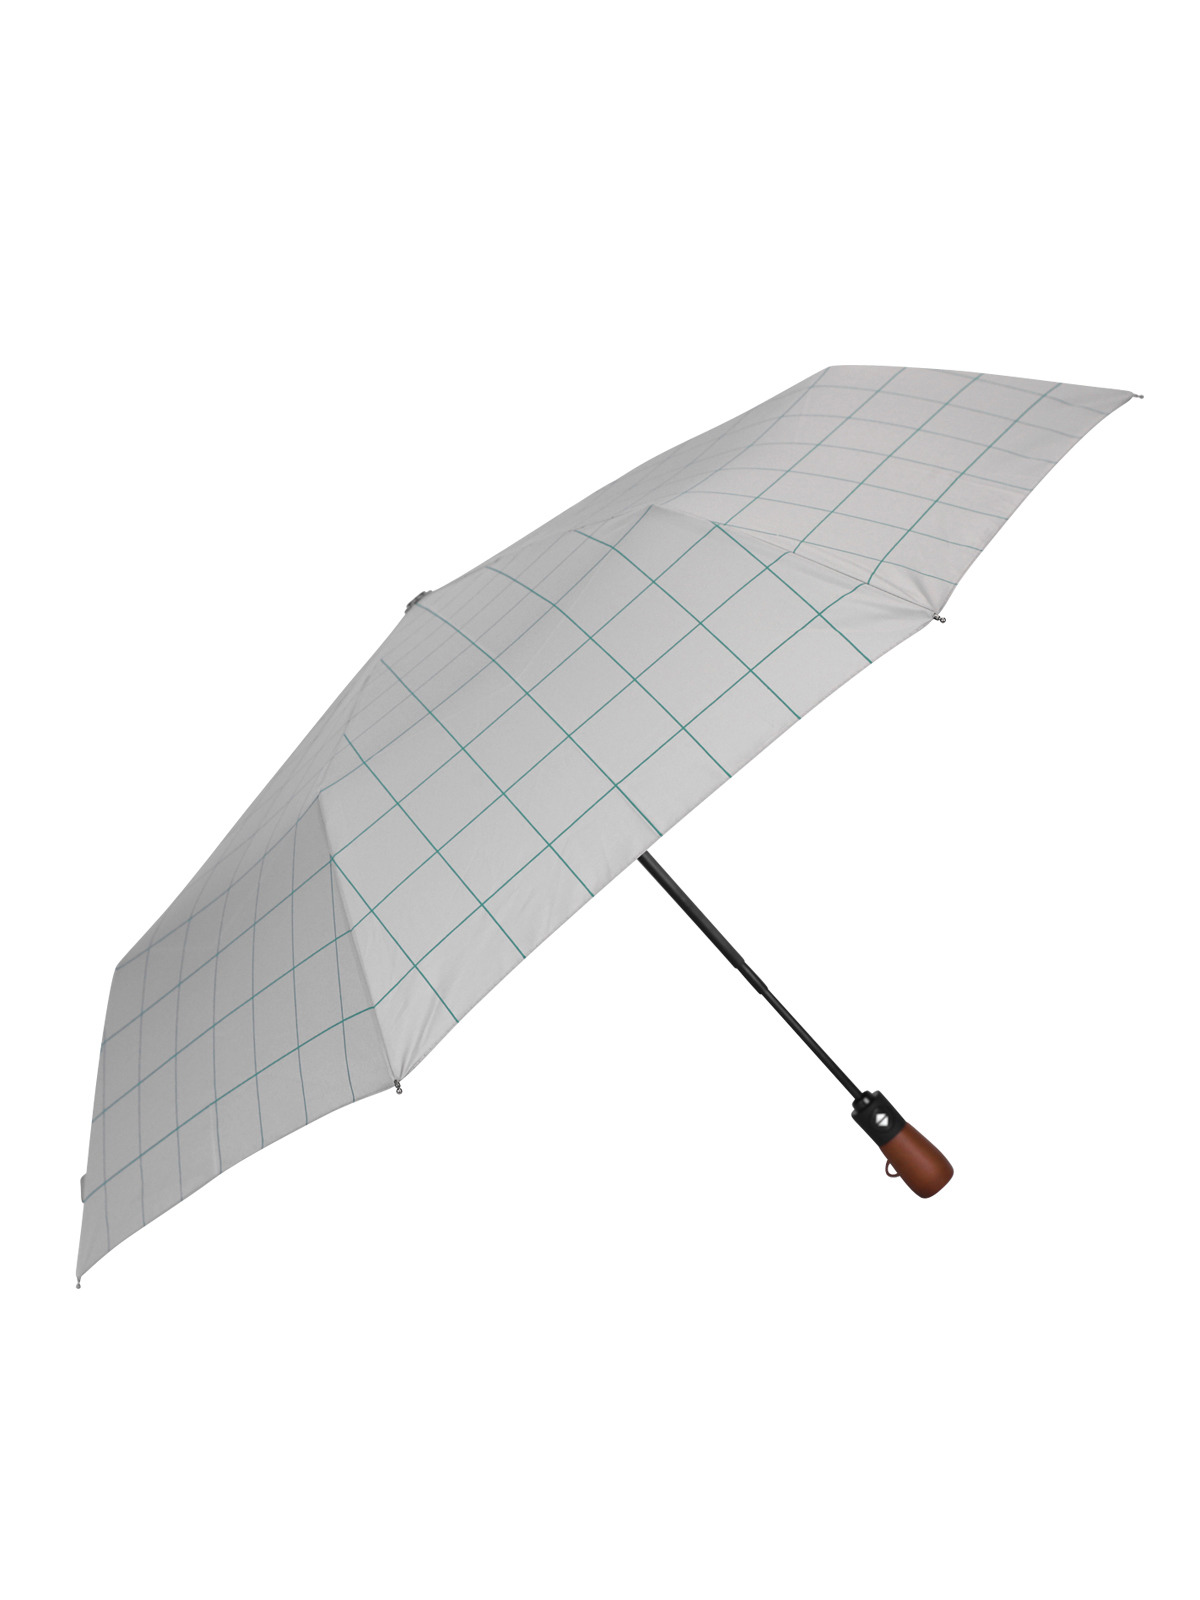 엘케이트 여성 우산 LDDR079 체크 패턴 자동 접이식 우드 핸들